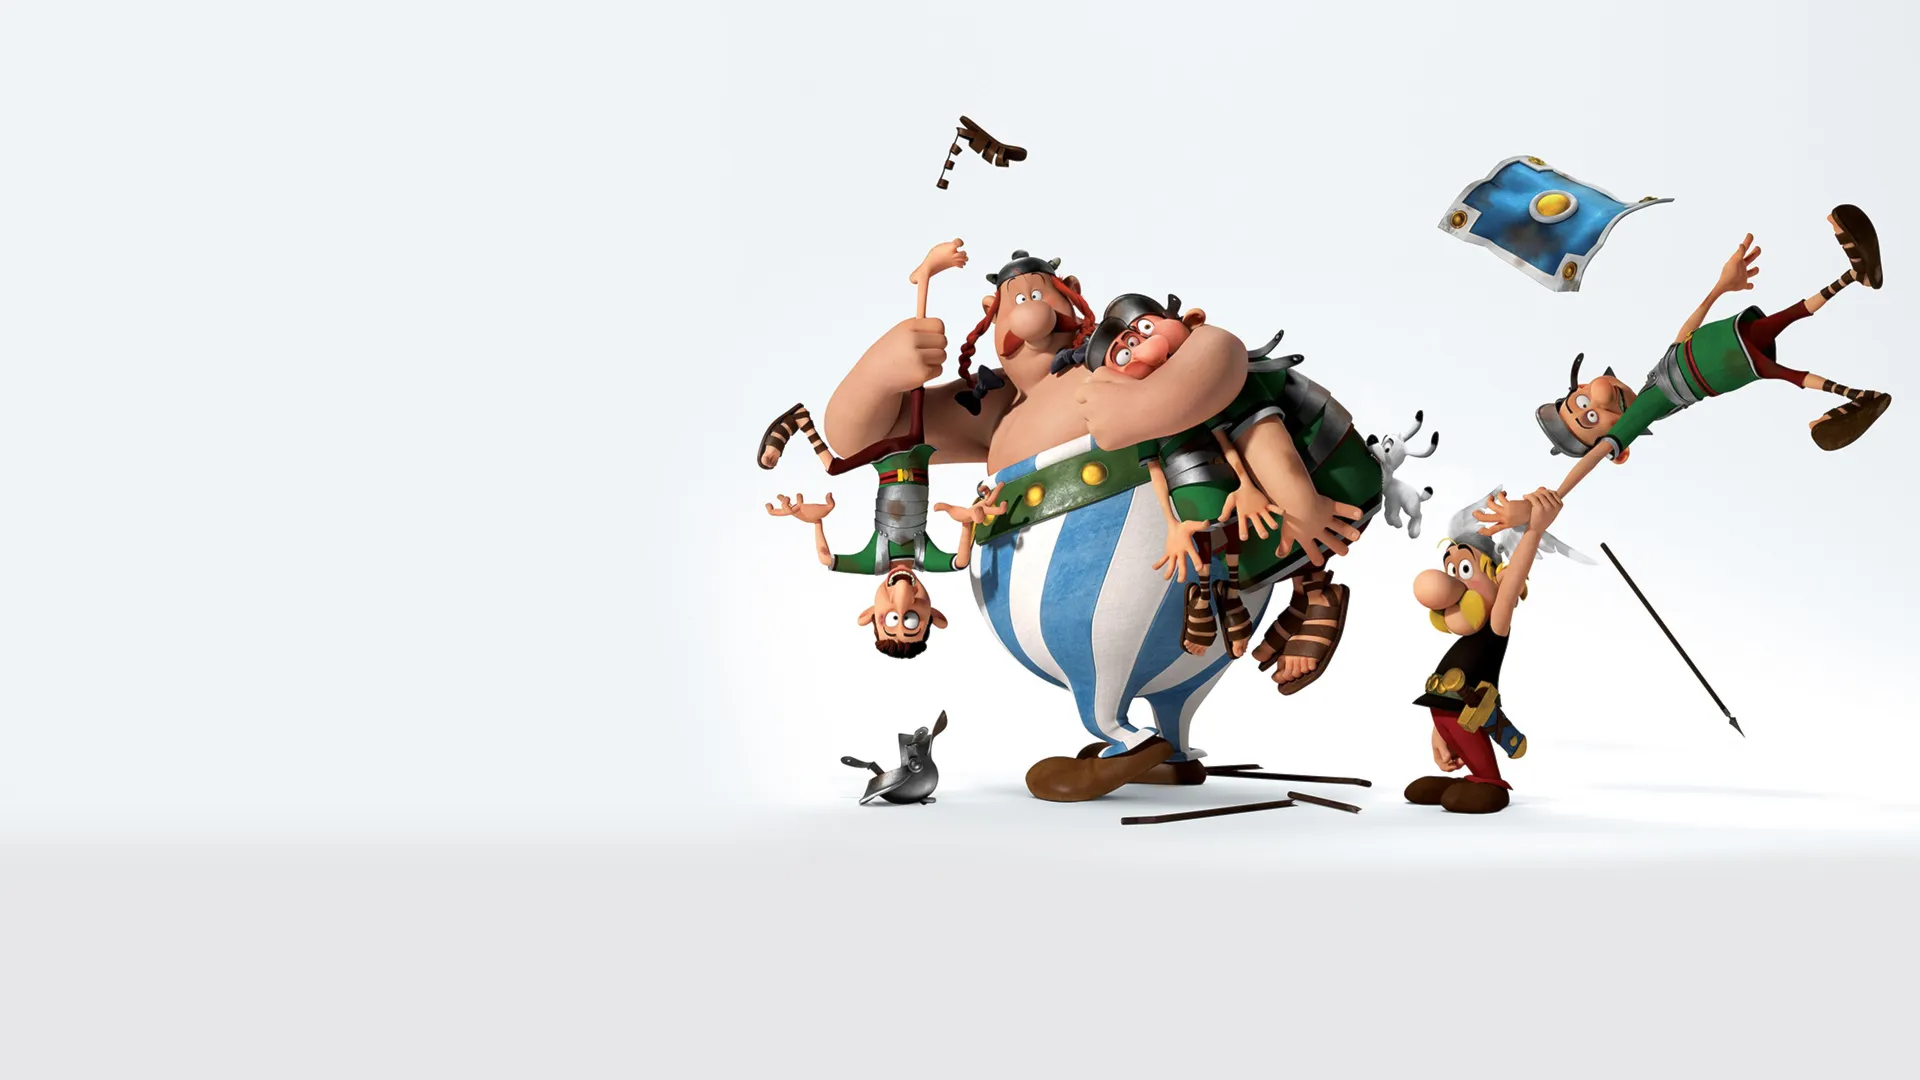 Asterix Và Vùng Đất Thần Thánh - Asterix: The Land Of The Gods